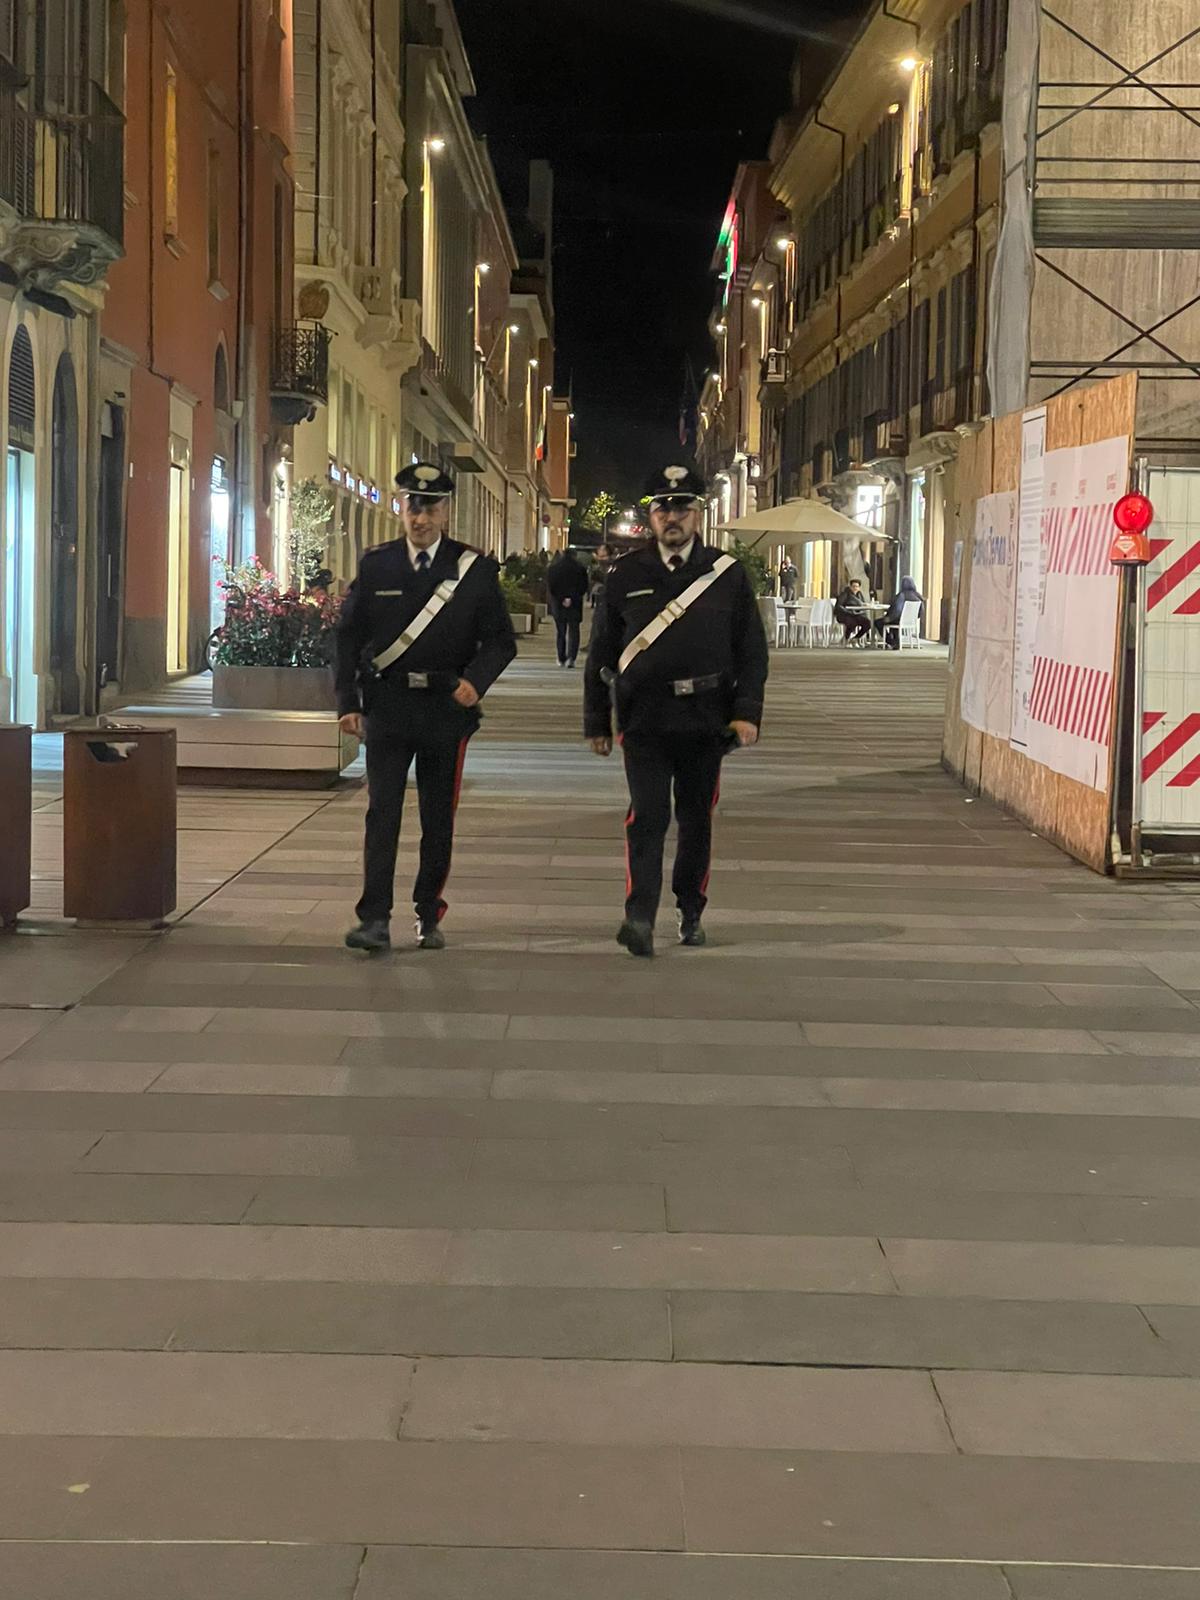 Teramo – Denunciate due persone dopo una lite armata a Piazza Garibaldi